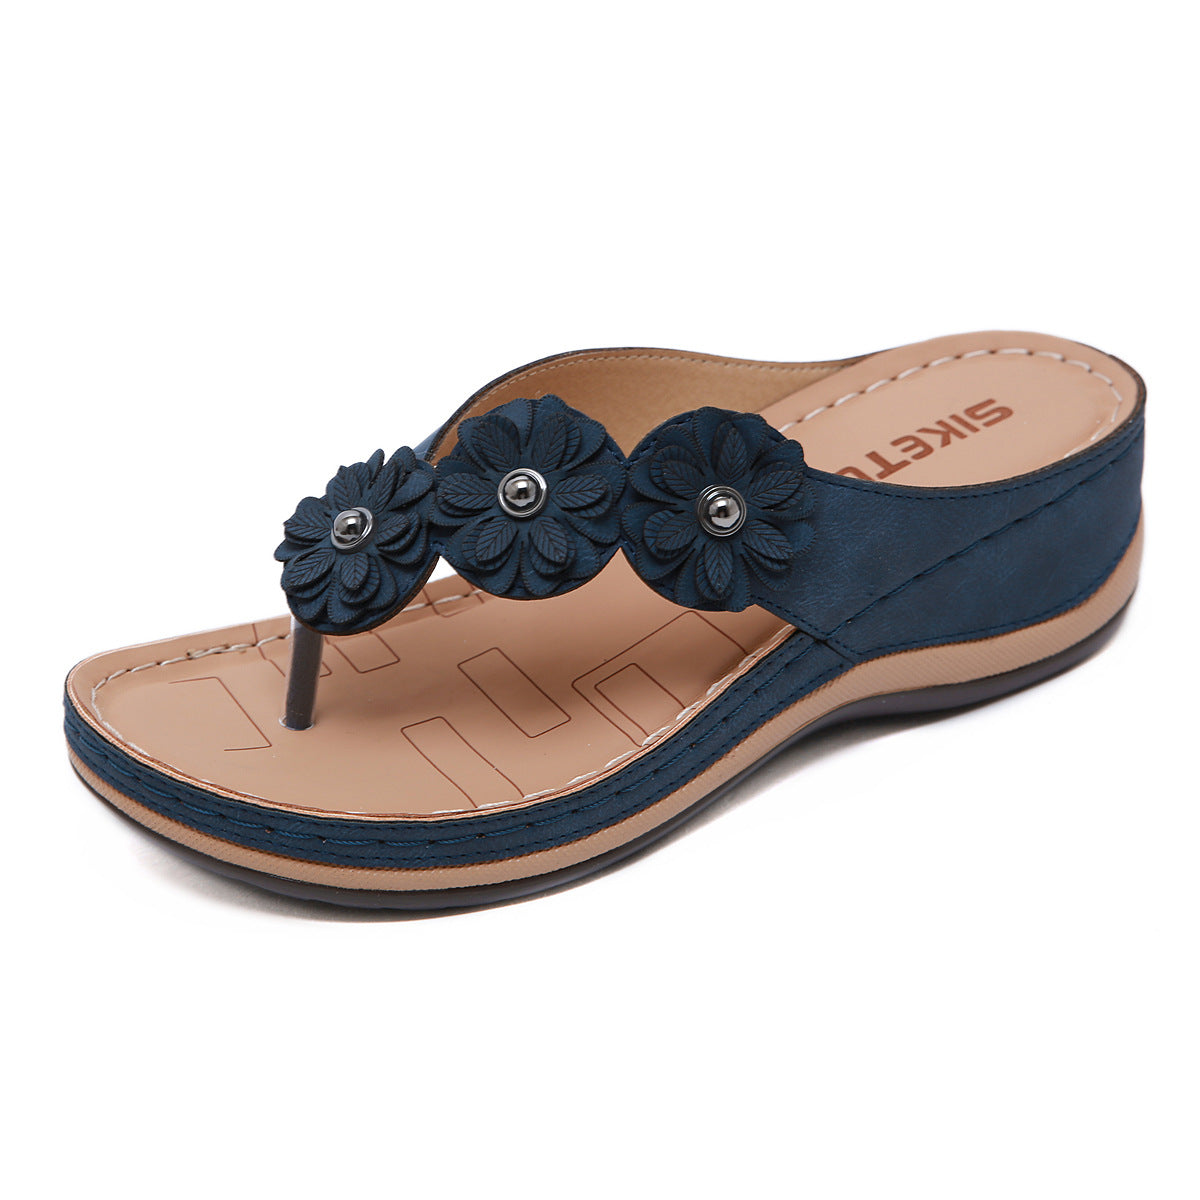 Ladies wedge sandals - ladieskits - 0